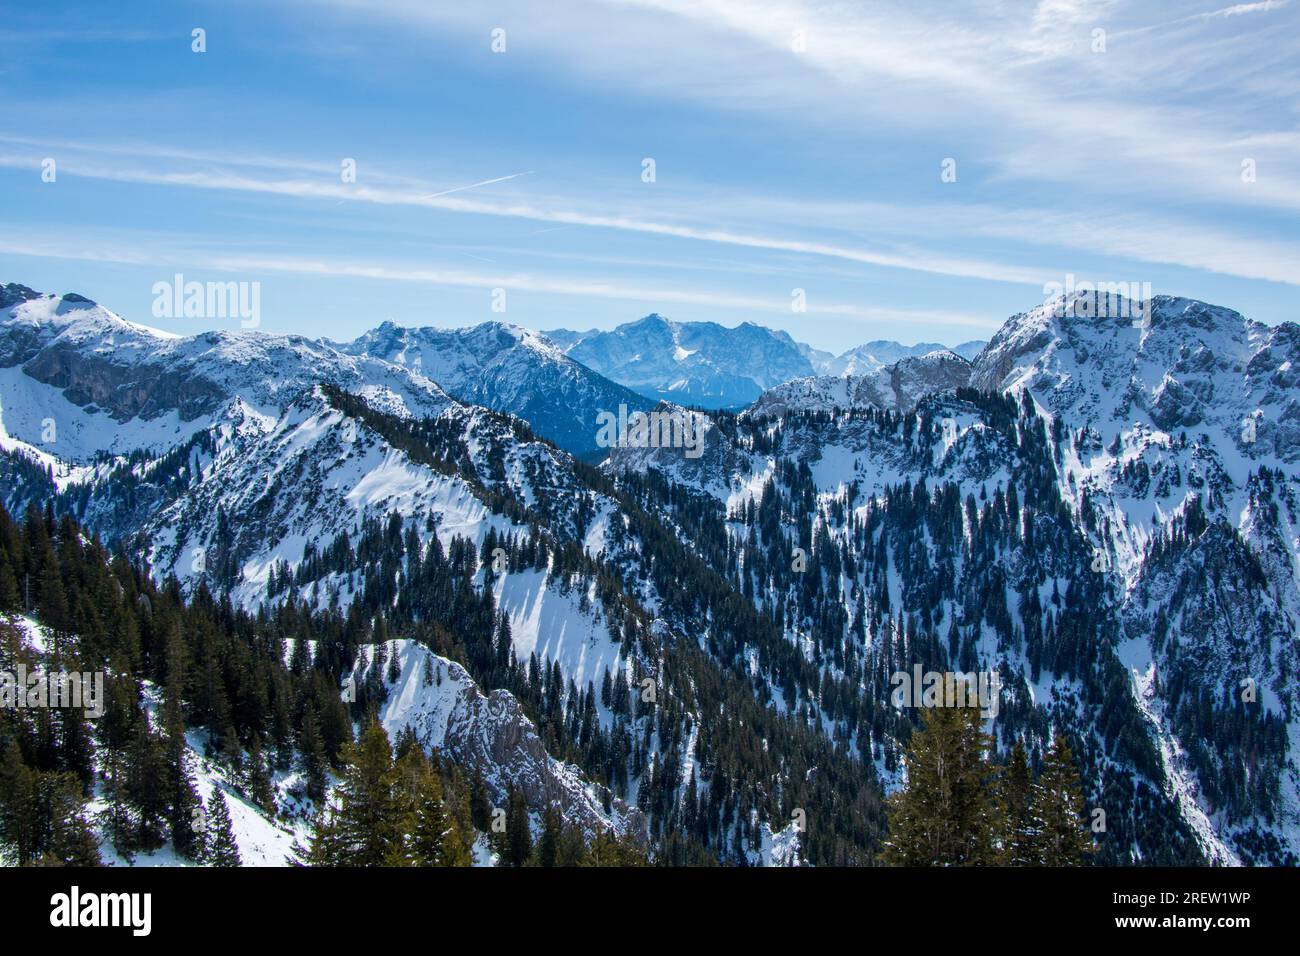 Vista mozzafiato delle vette innevate delle Alpi tedesche e austriache in inverno Foto Stock